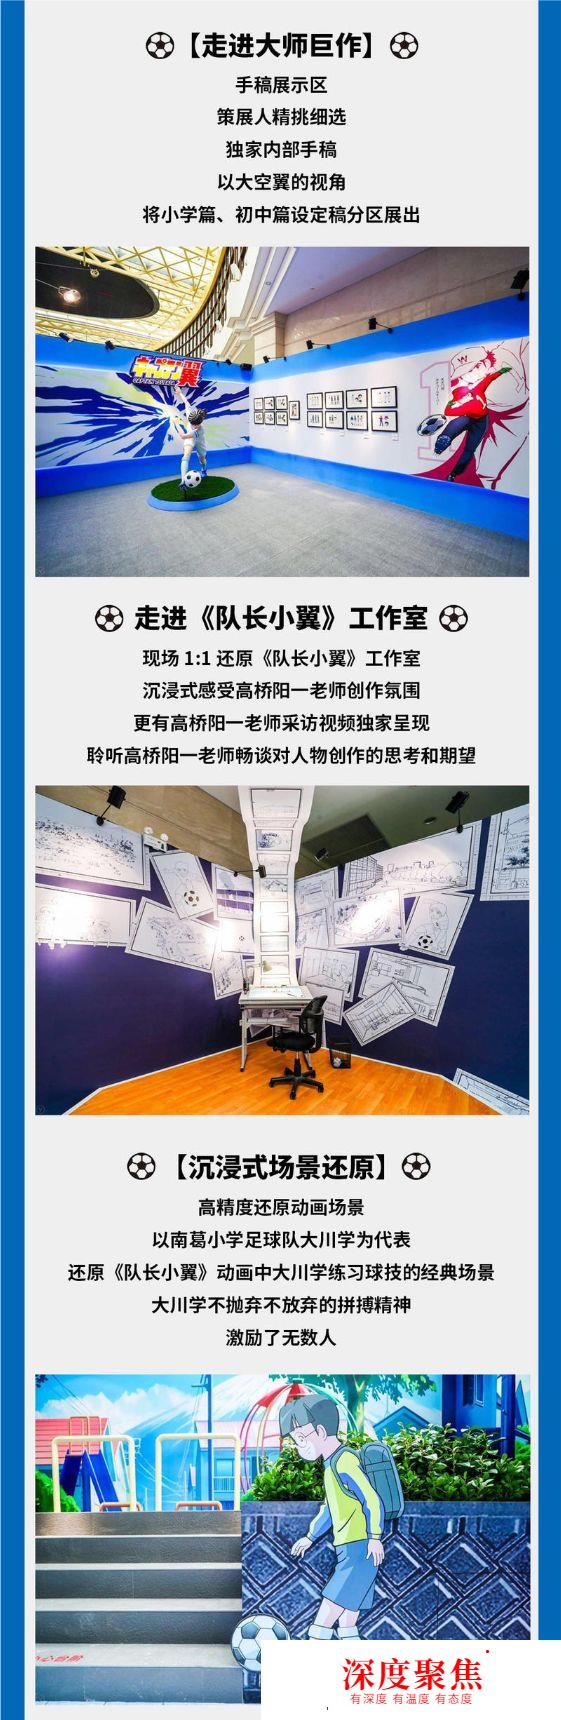 《足球小将》中国首展登陆上海！日语君请你免费看展